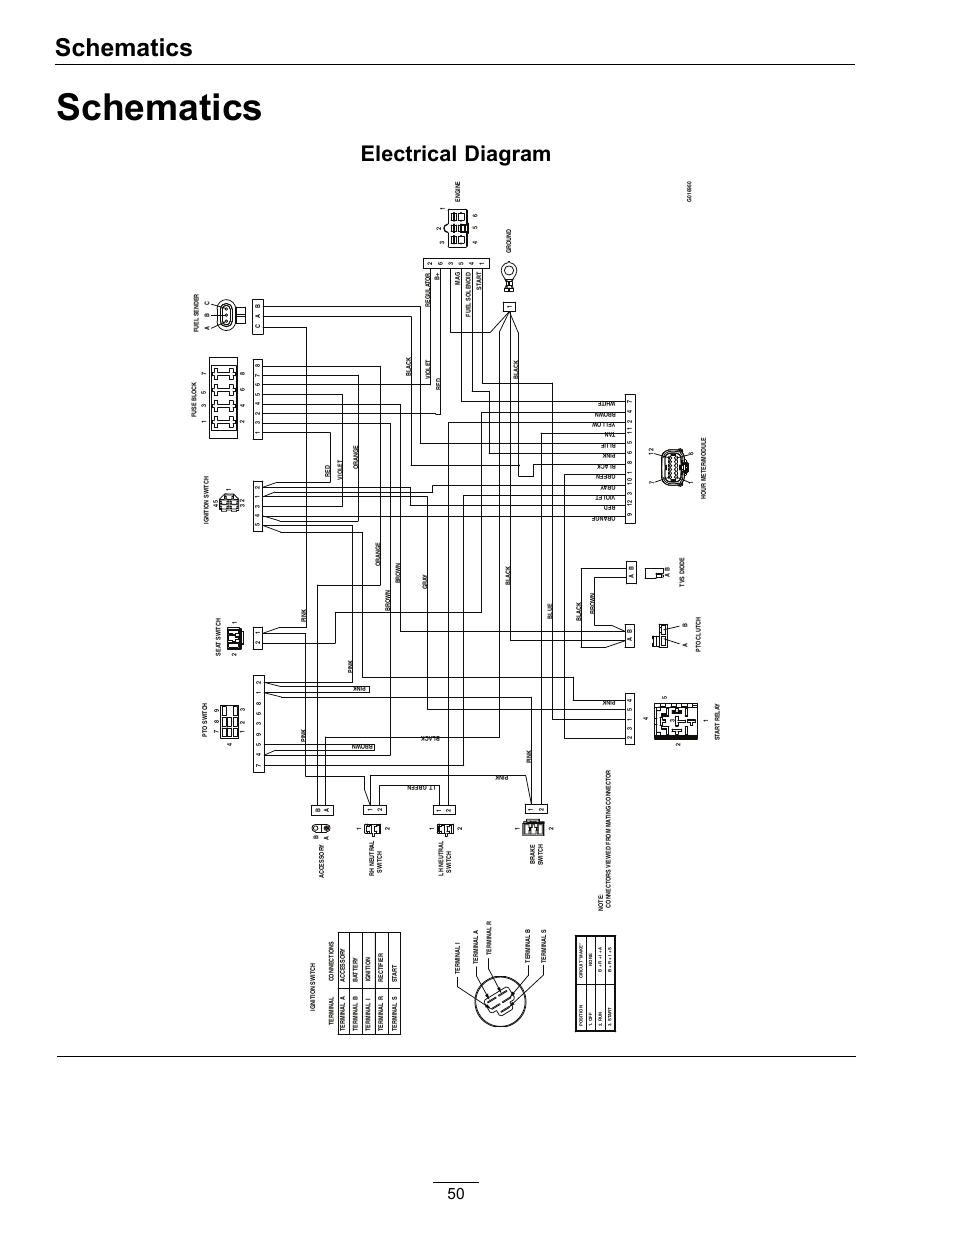 schecter omen extreme 6 wiring diagram